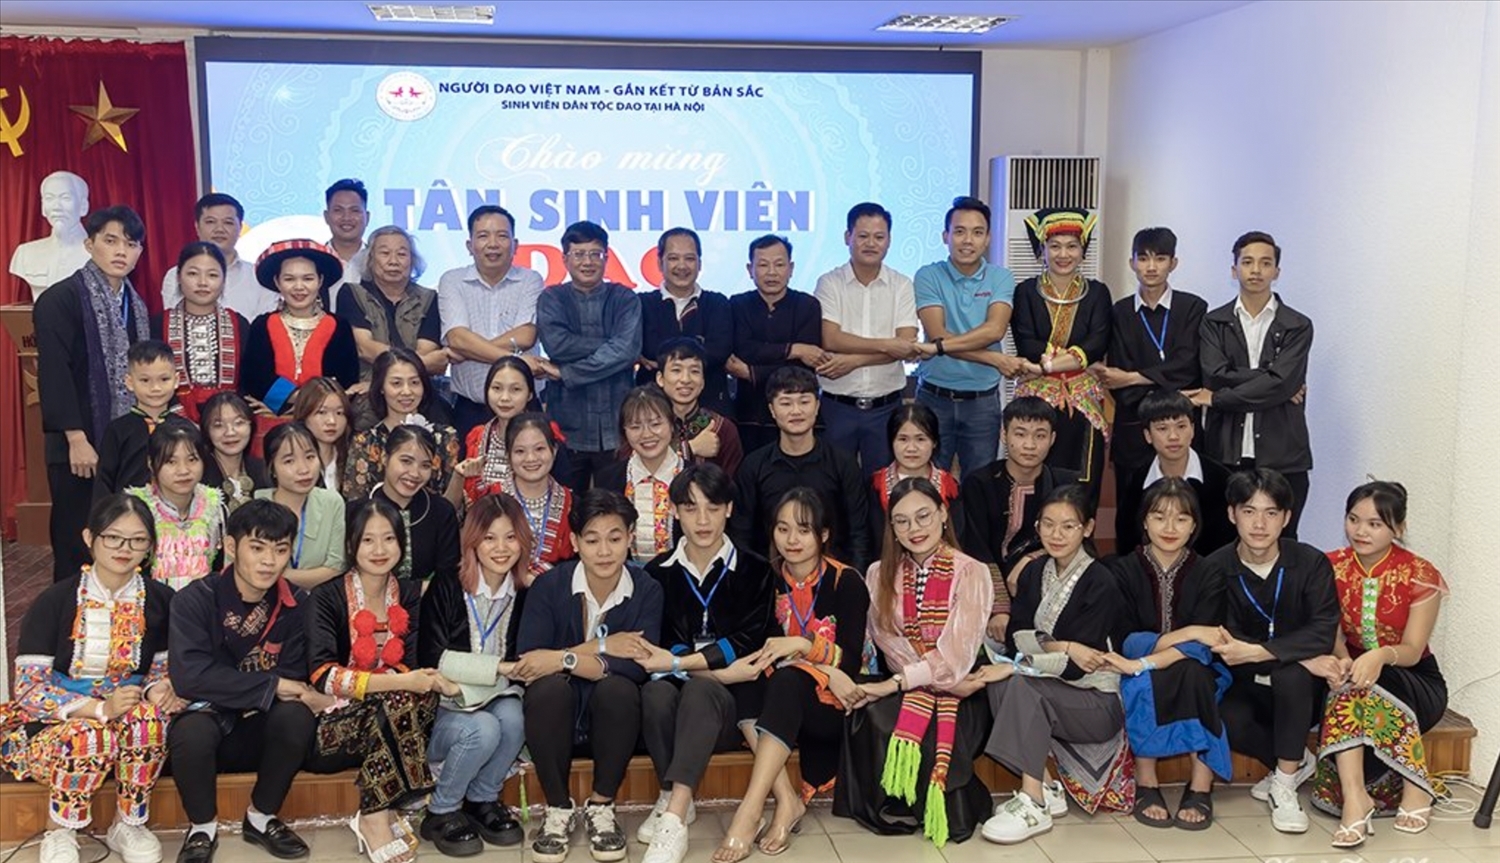 Lễ chào đón tân sinh viên dân tộc Dao tại Hà Nội lần thứ 2 5